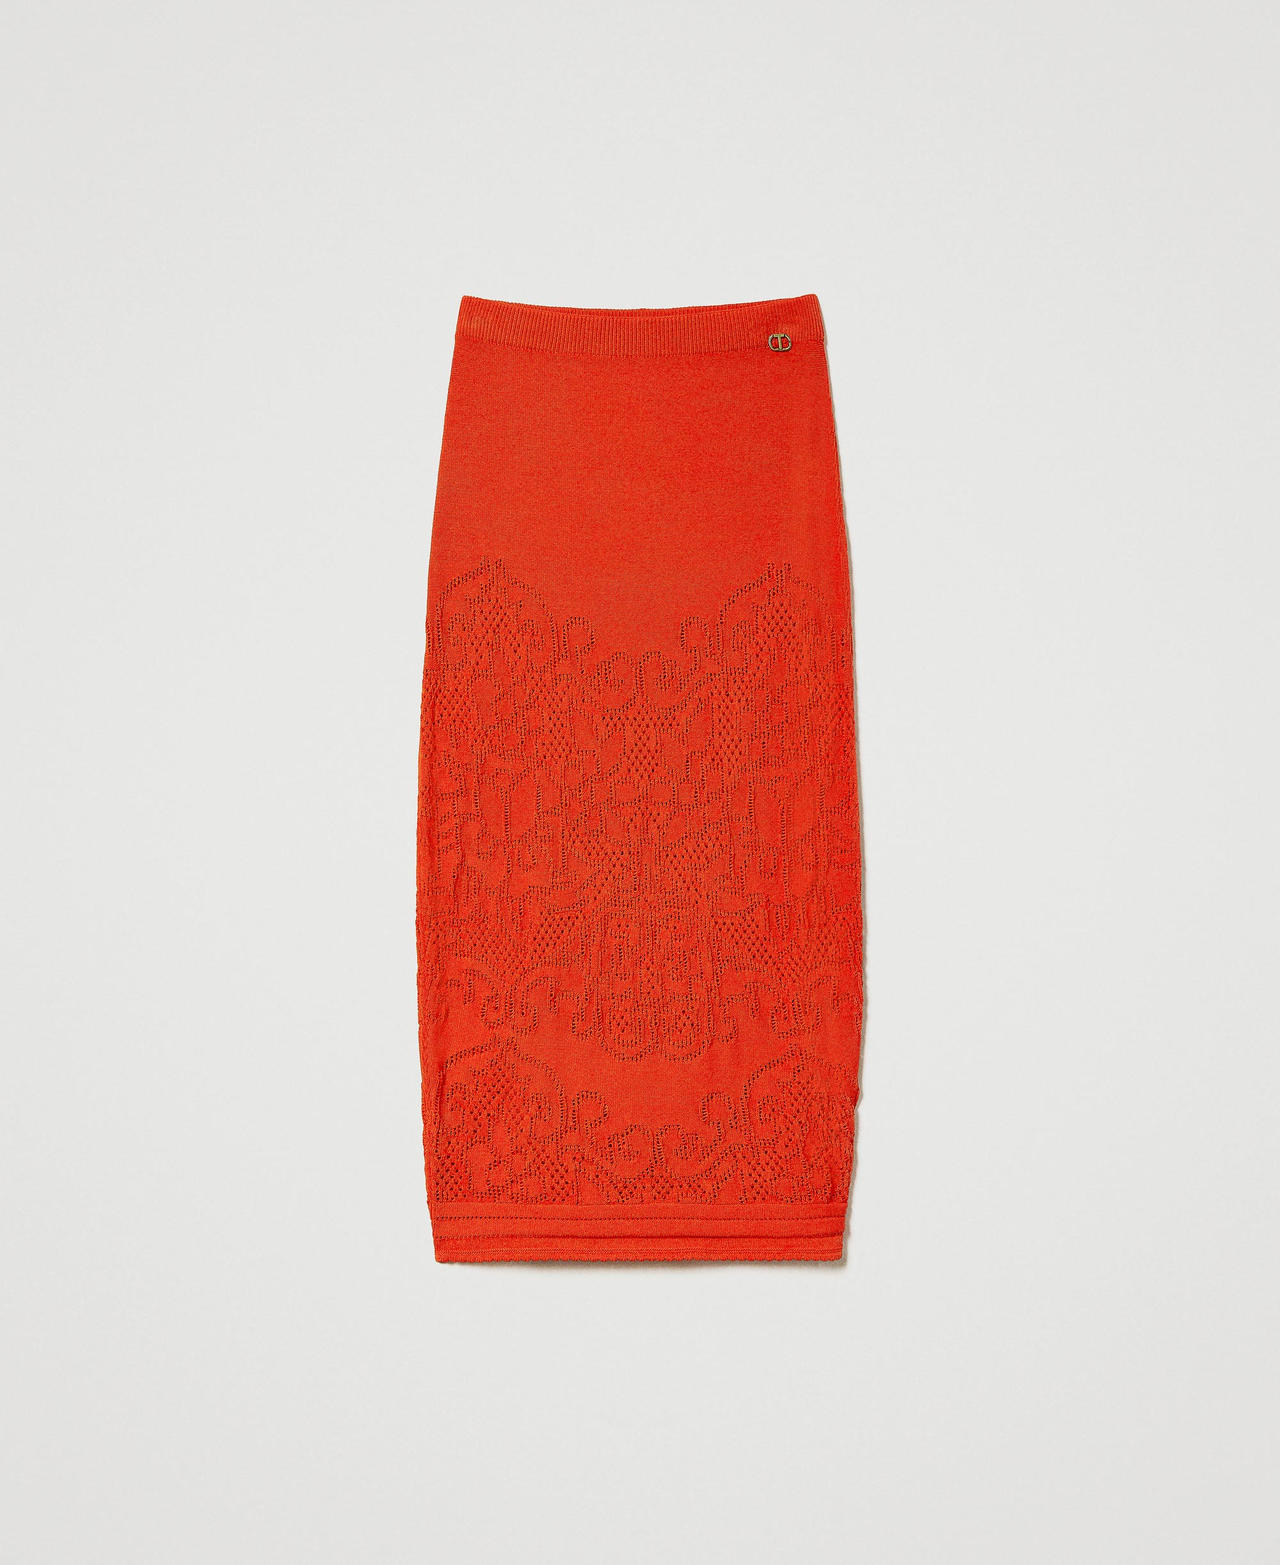 Jupe mi-longue avec fleurs ajourées Orange « Orange Sun » Femme 231TT3156-0S